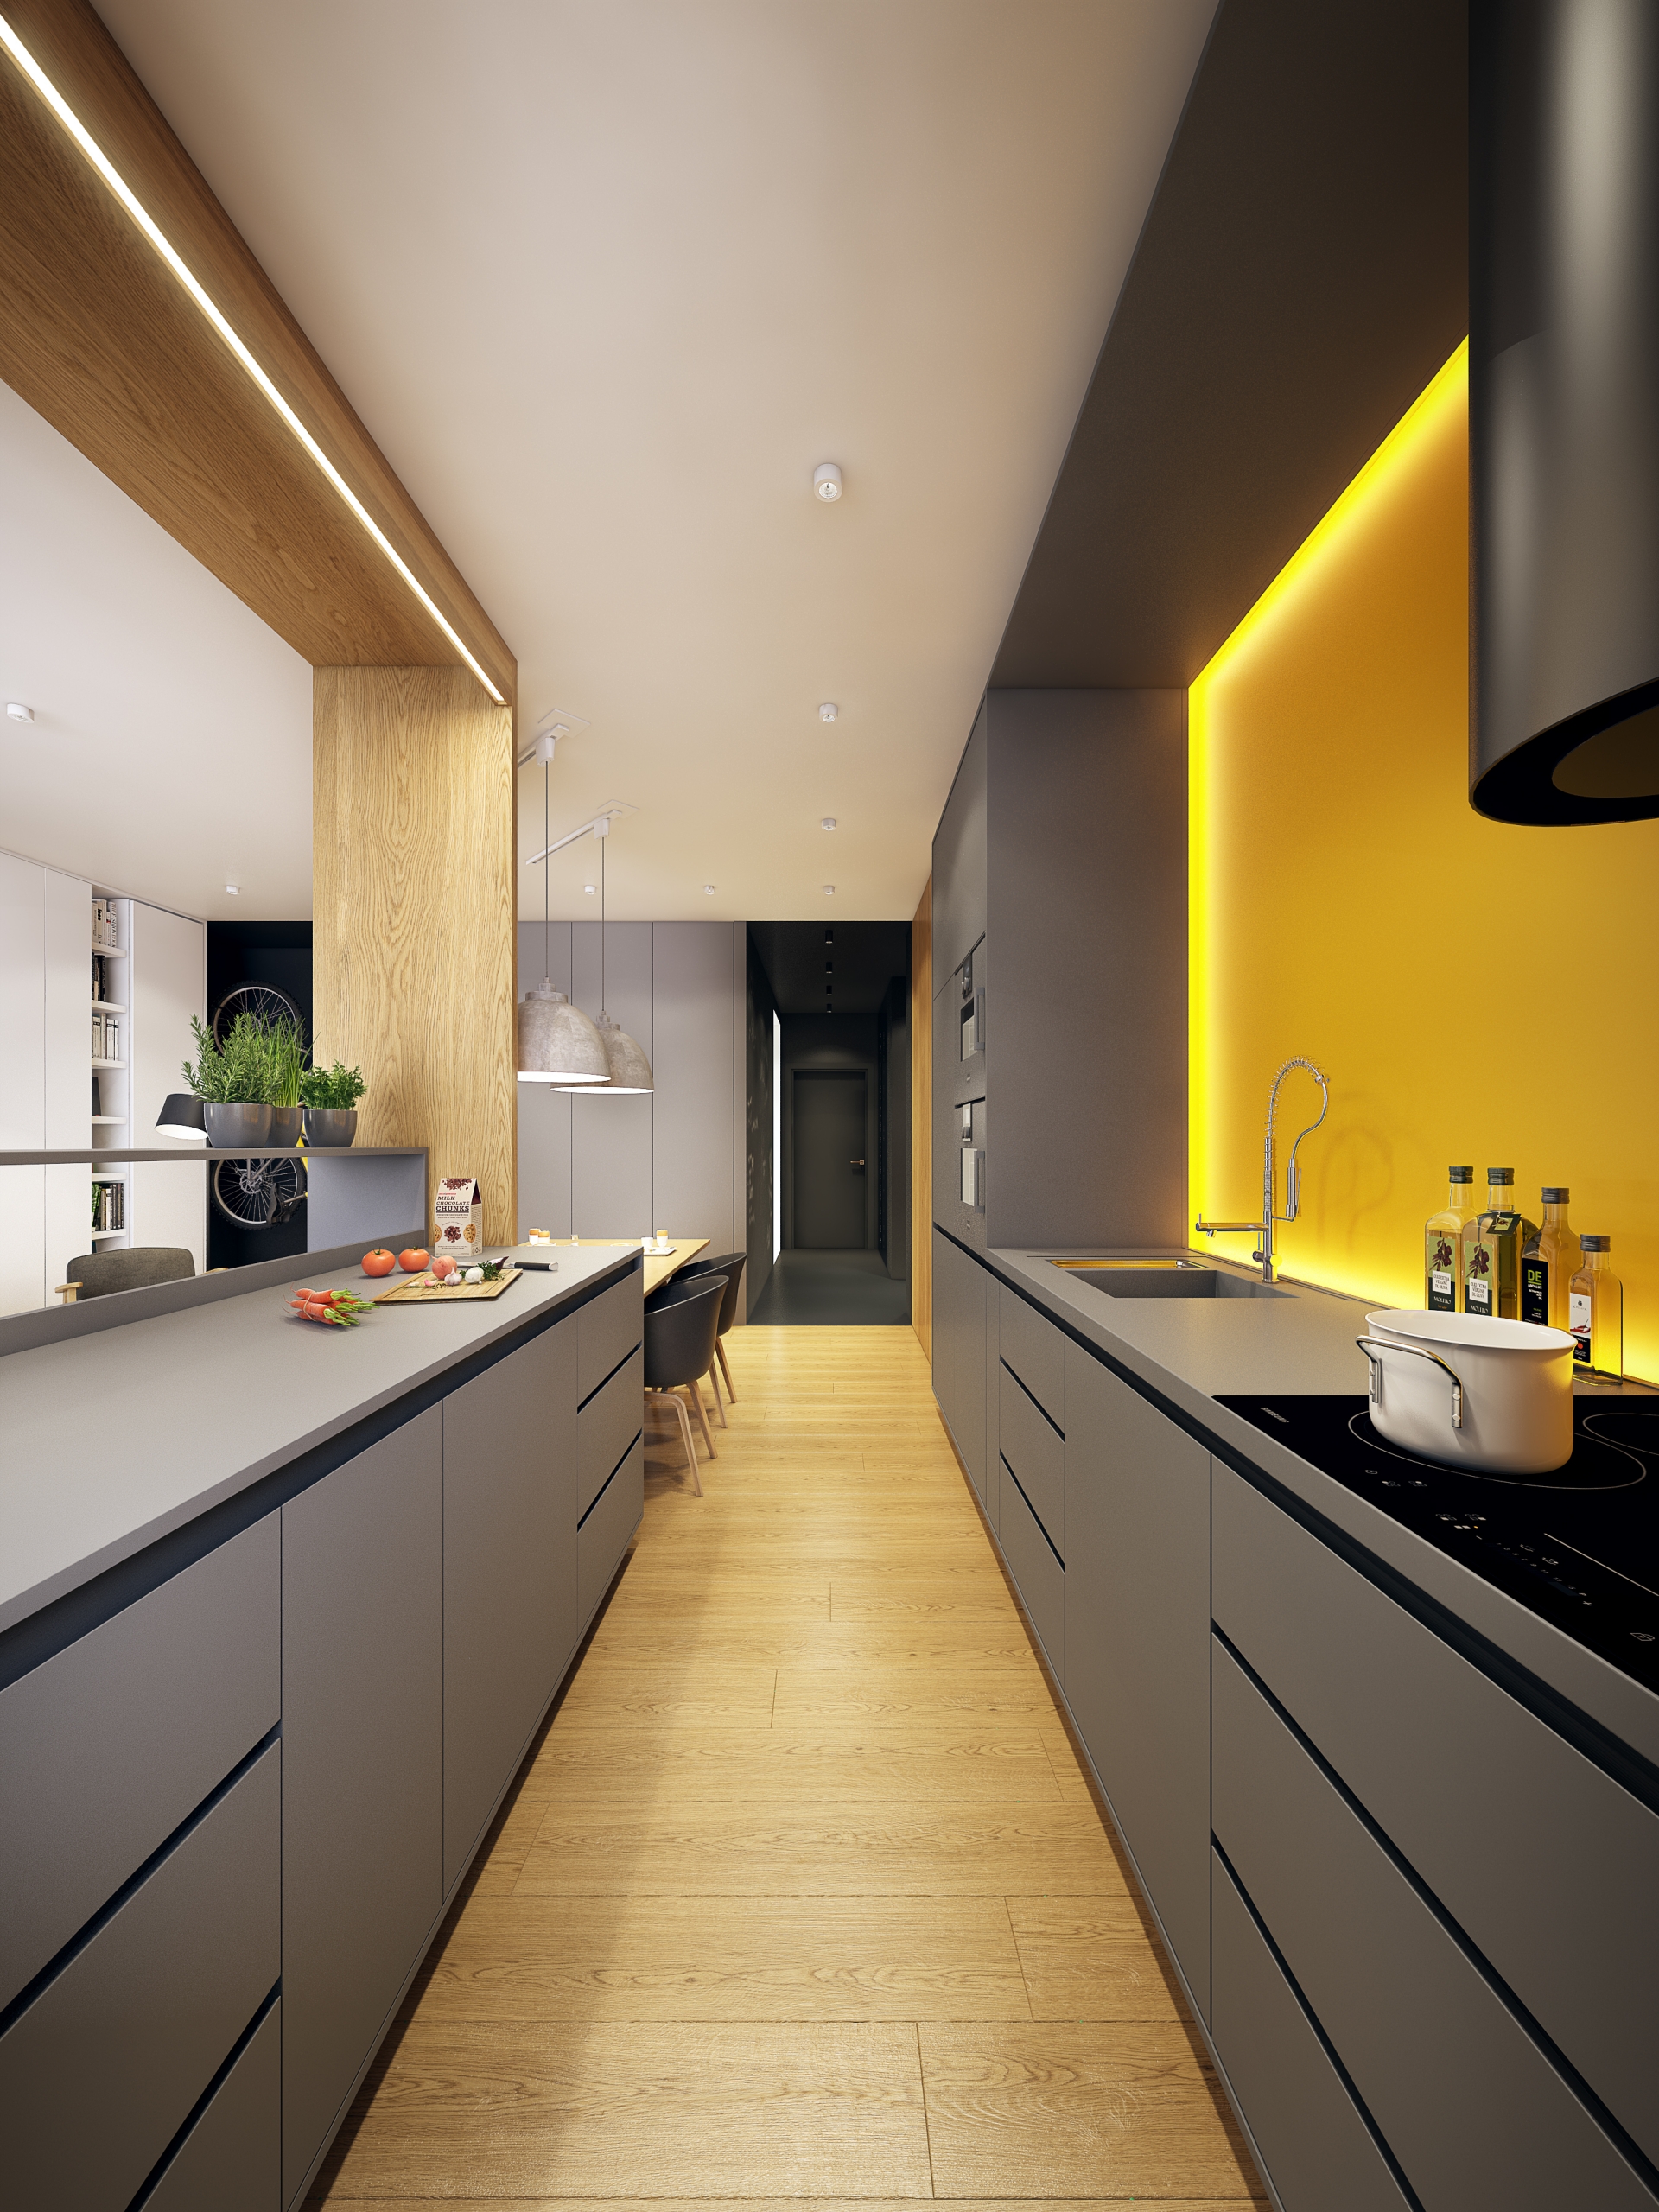 Phòng bếp tiện nghi với hệ tủ bếp đồng bộ một màu xám sang trọng, kết hợp cùng backsplash màu vàng mù tạt và hệ thống đèn LED cho hiệu ứng ánh sáng vô cùng lung linh và đẹp mắt lúc đêm về.